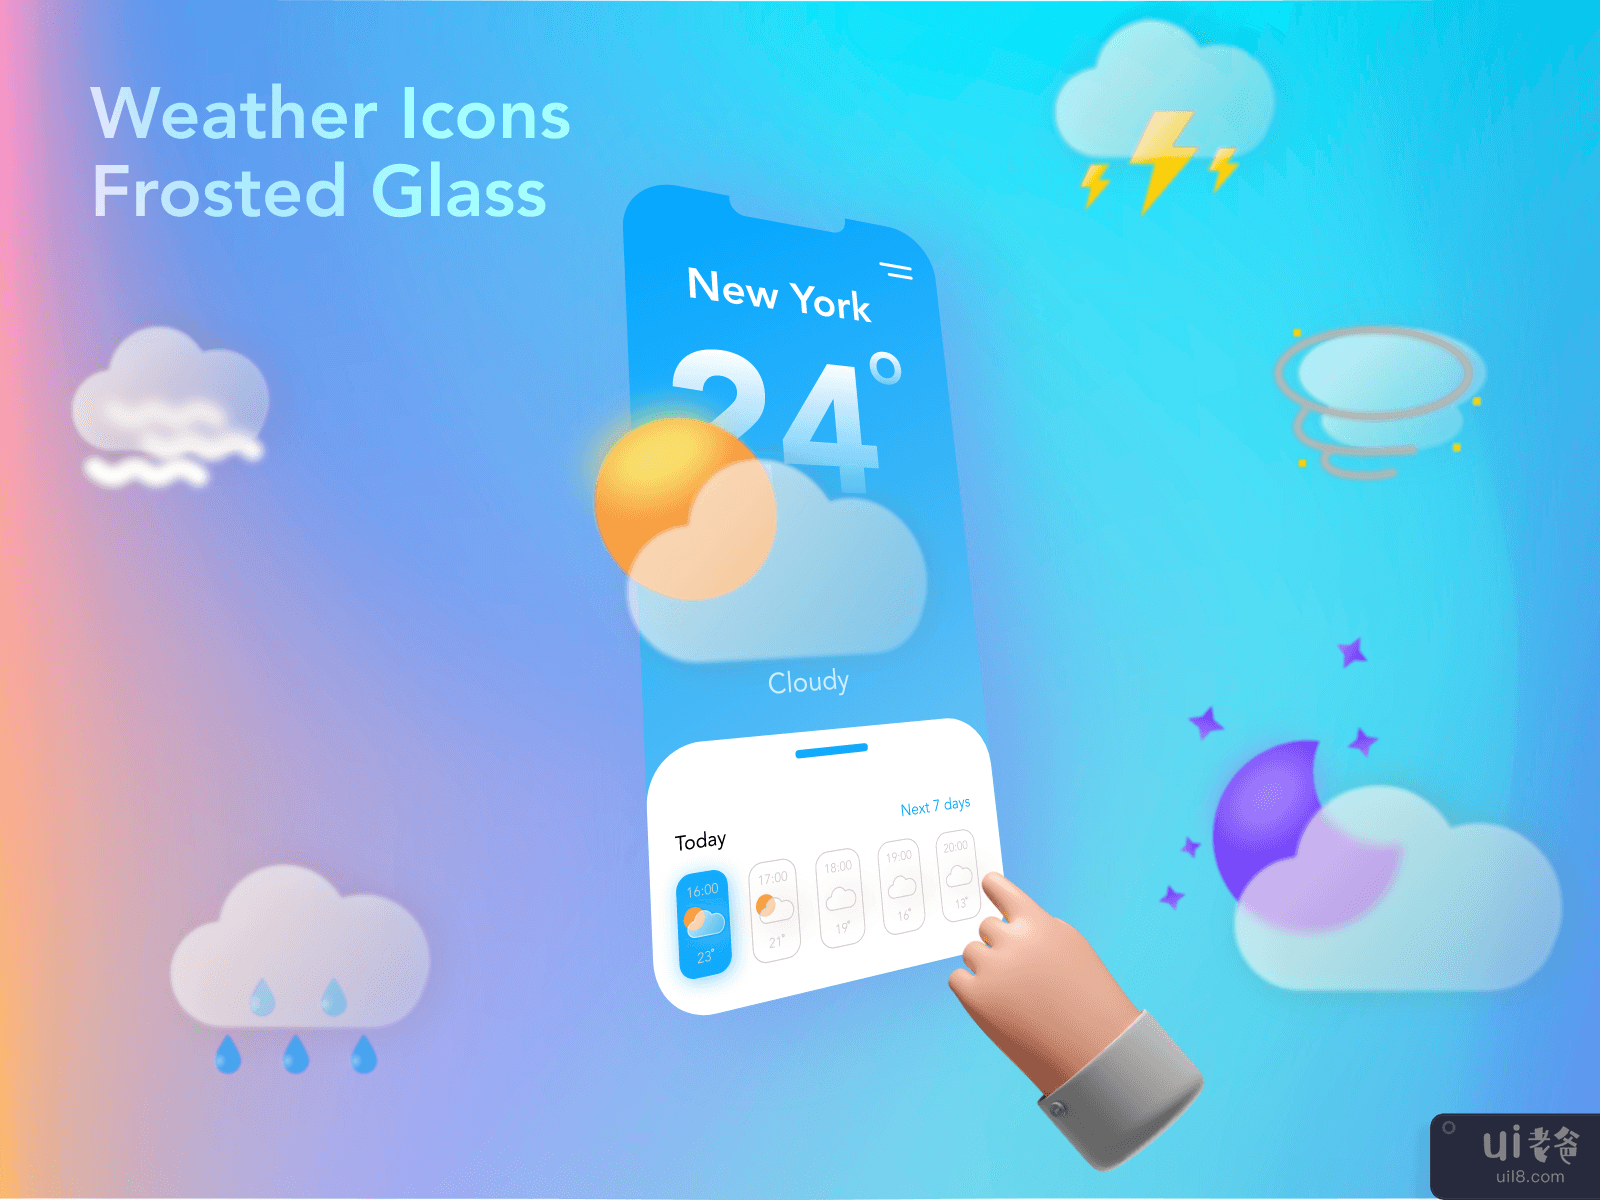 磨砂玻璃天气图标(Frosted Glass Weather Icons)插图